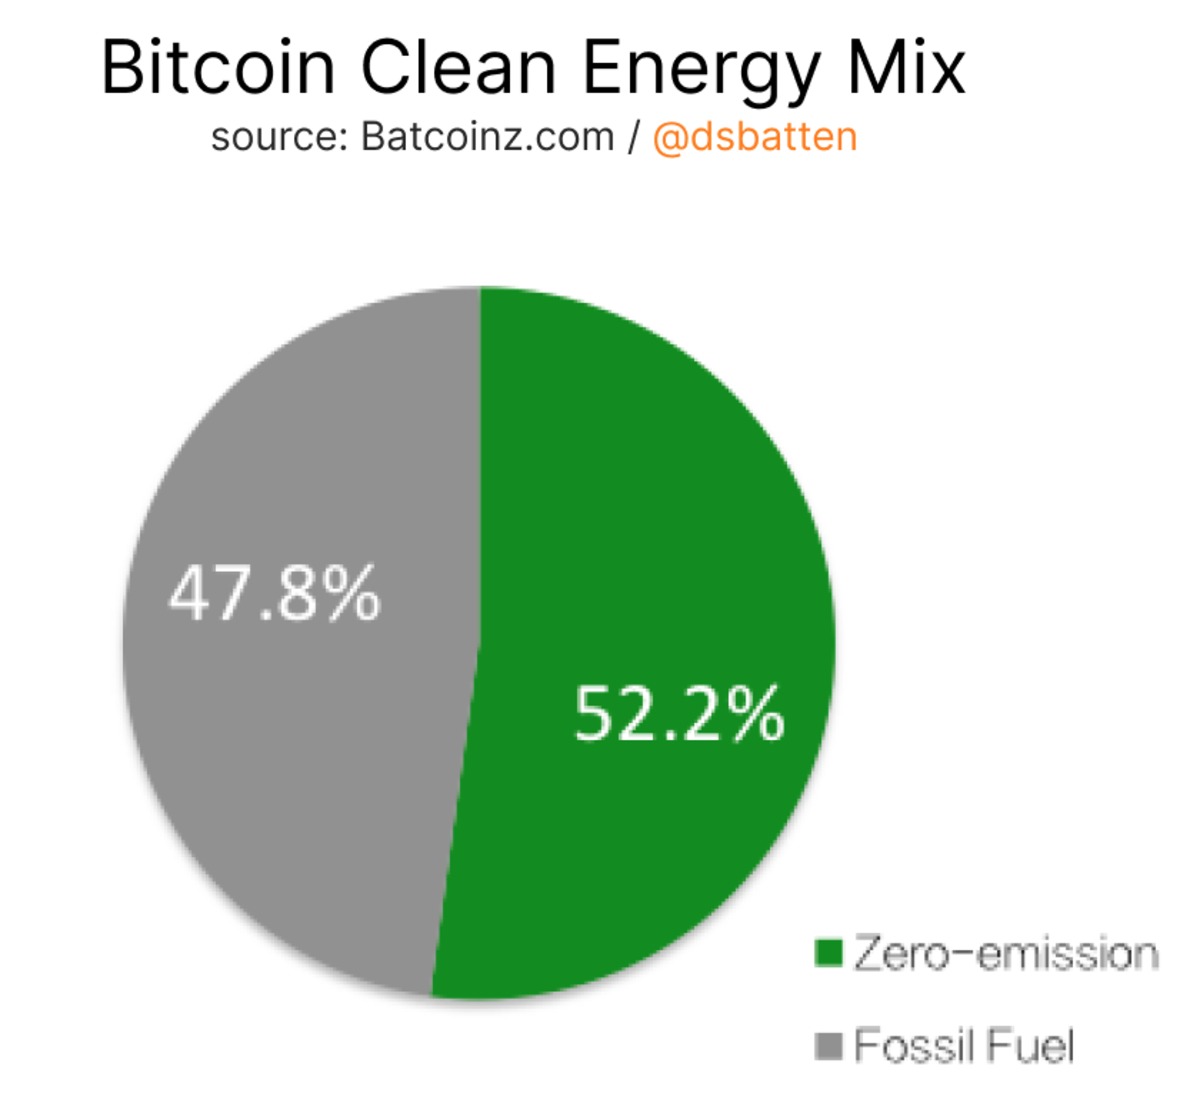 Sau khi Kazakhstan ngừng hoạt động khai thác Bitcoin, phần lớn tỷ lệ băm toàn cầu hiện được sản xuất bằng năng lượng sạch.